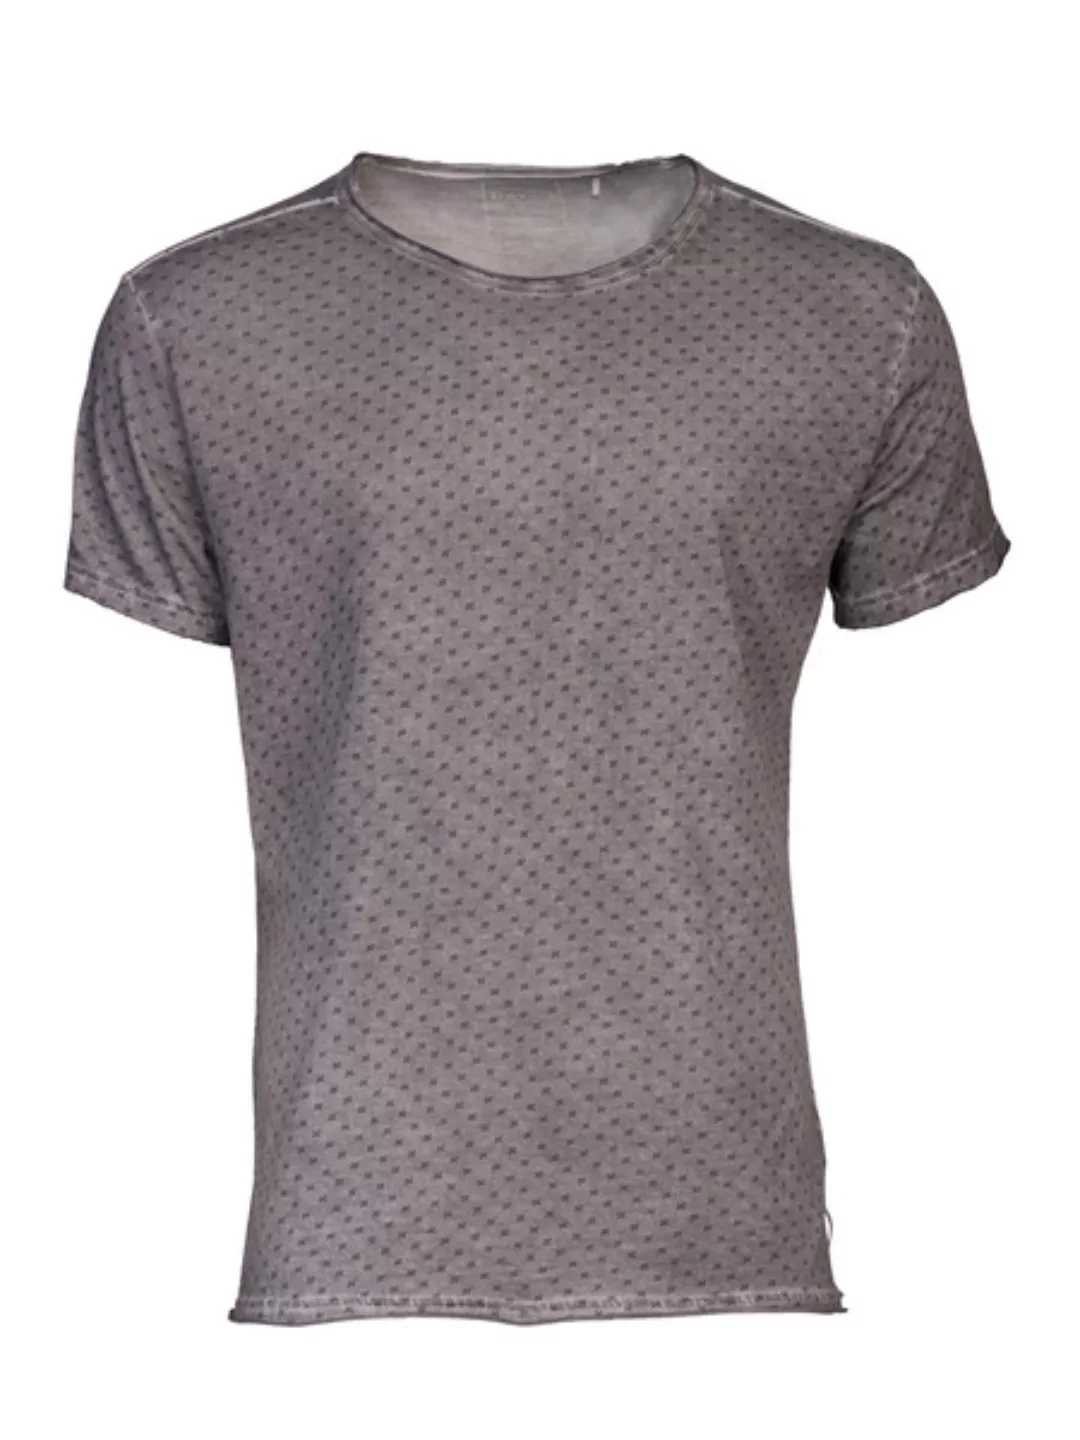 Softes T-shirt Mit Allover Print: Kurt günstig online kaufen